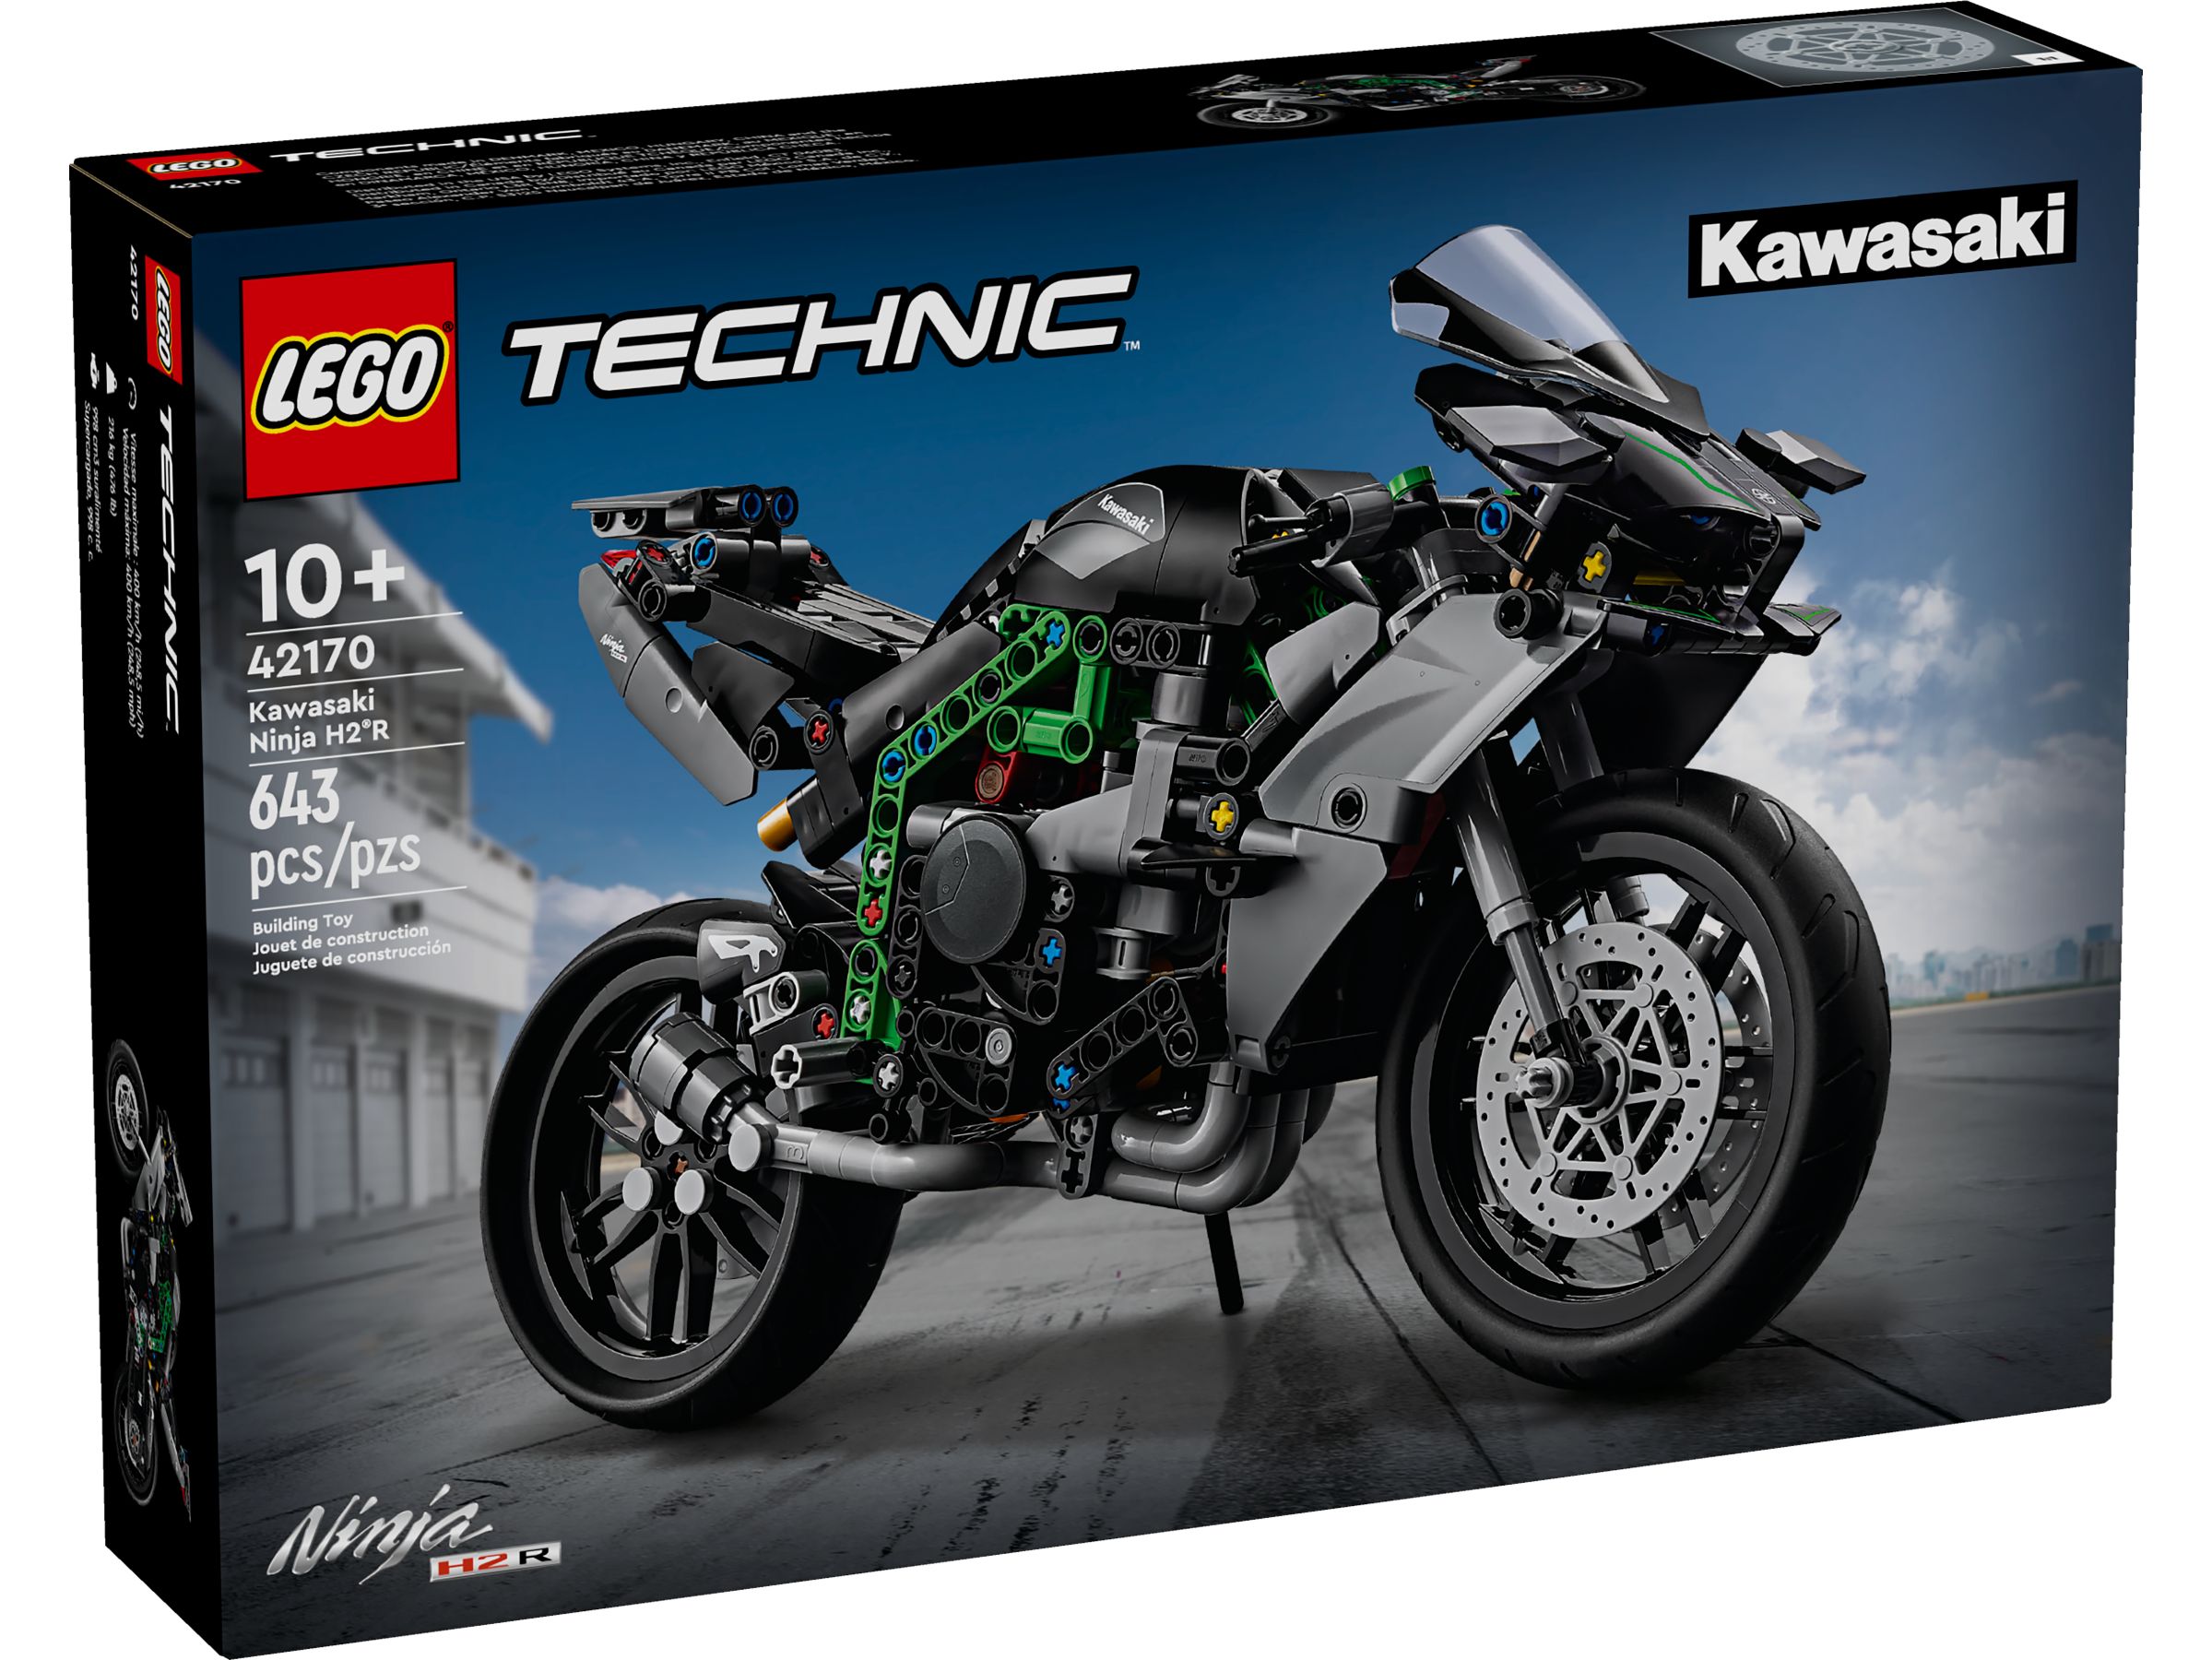 LEGO Technic 42170 Kawasaki Ninja H2R Motorrad LEGO_42170_Box1_v39.jpg